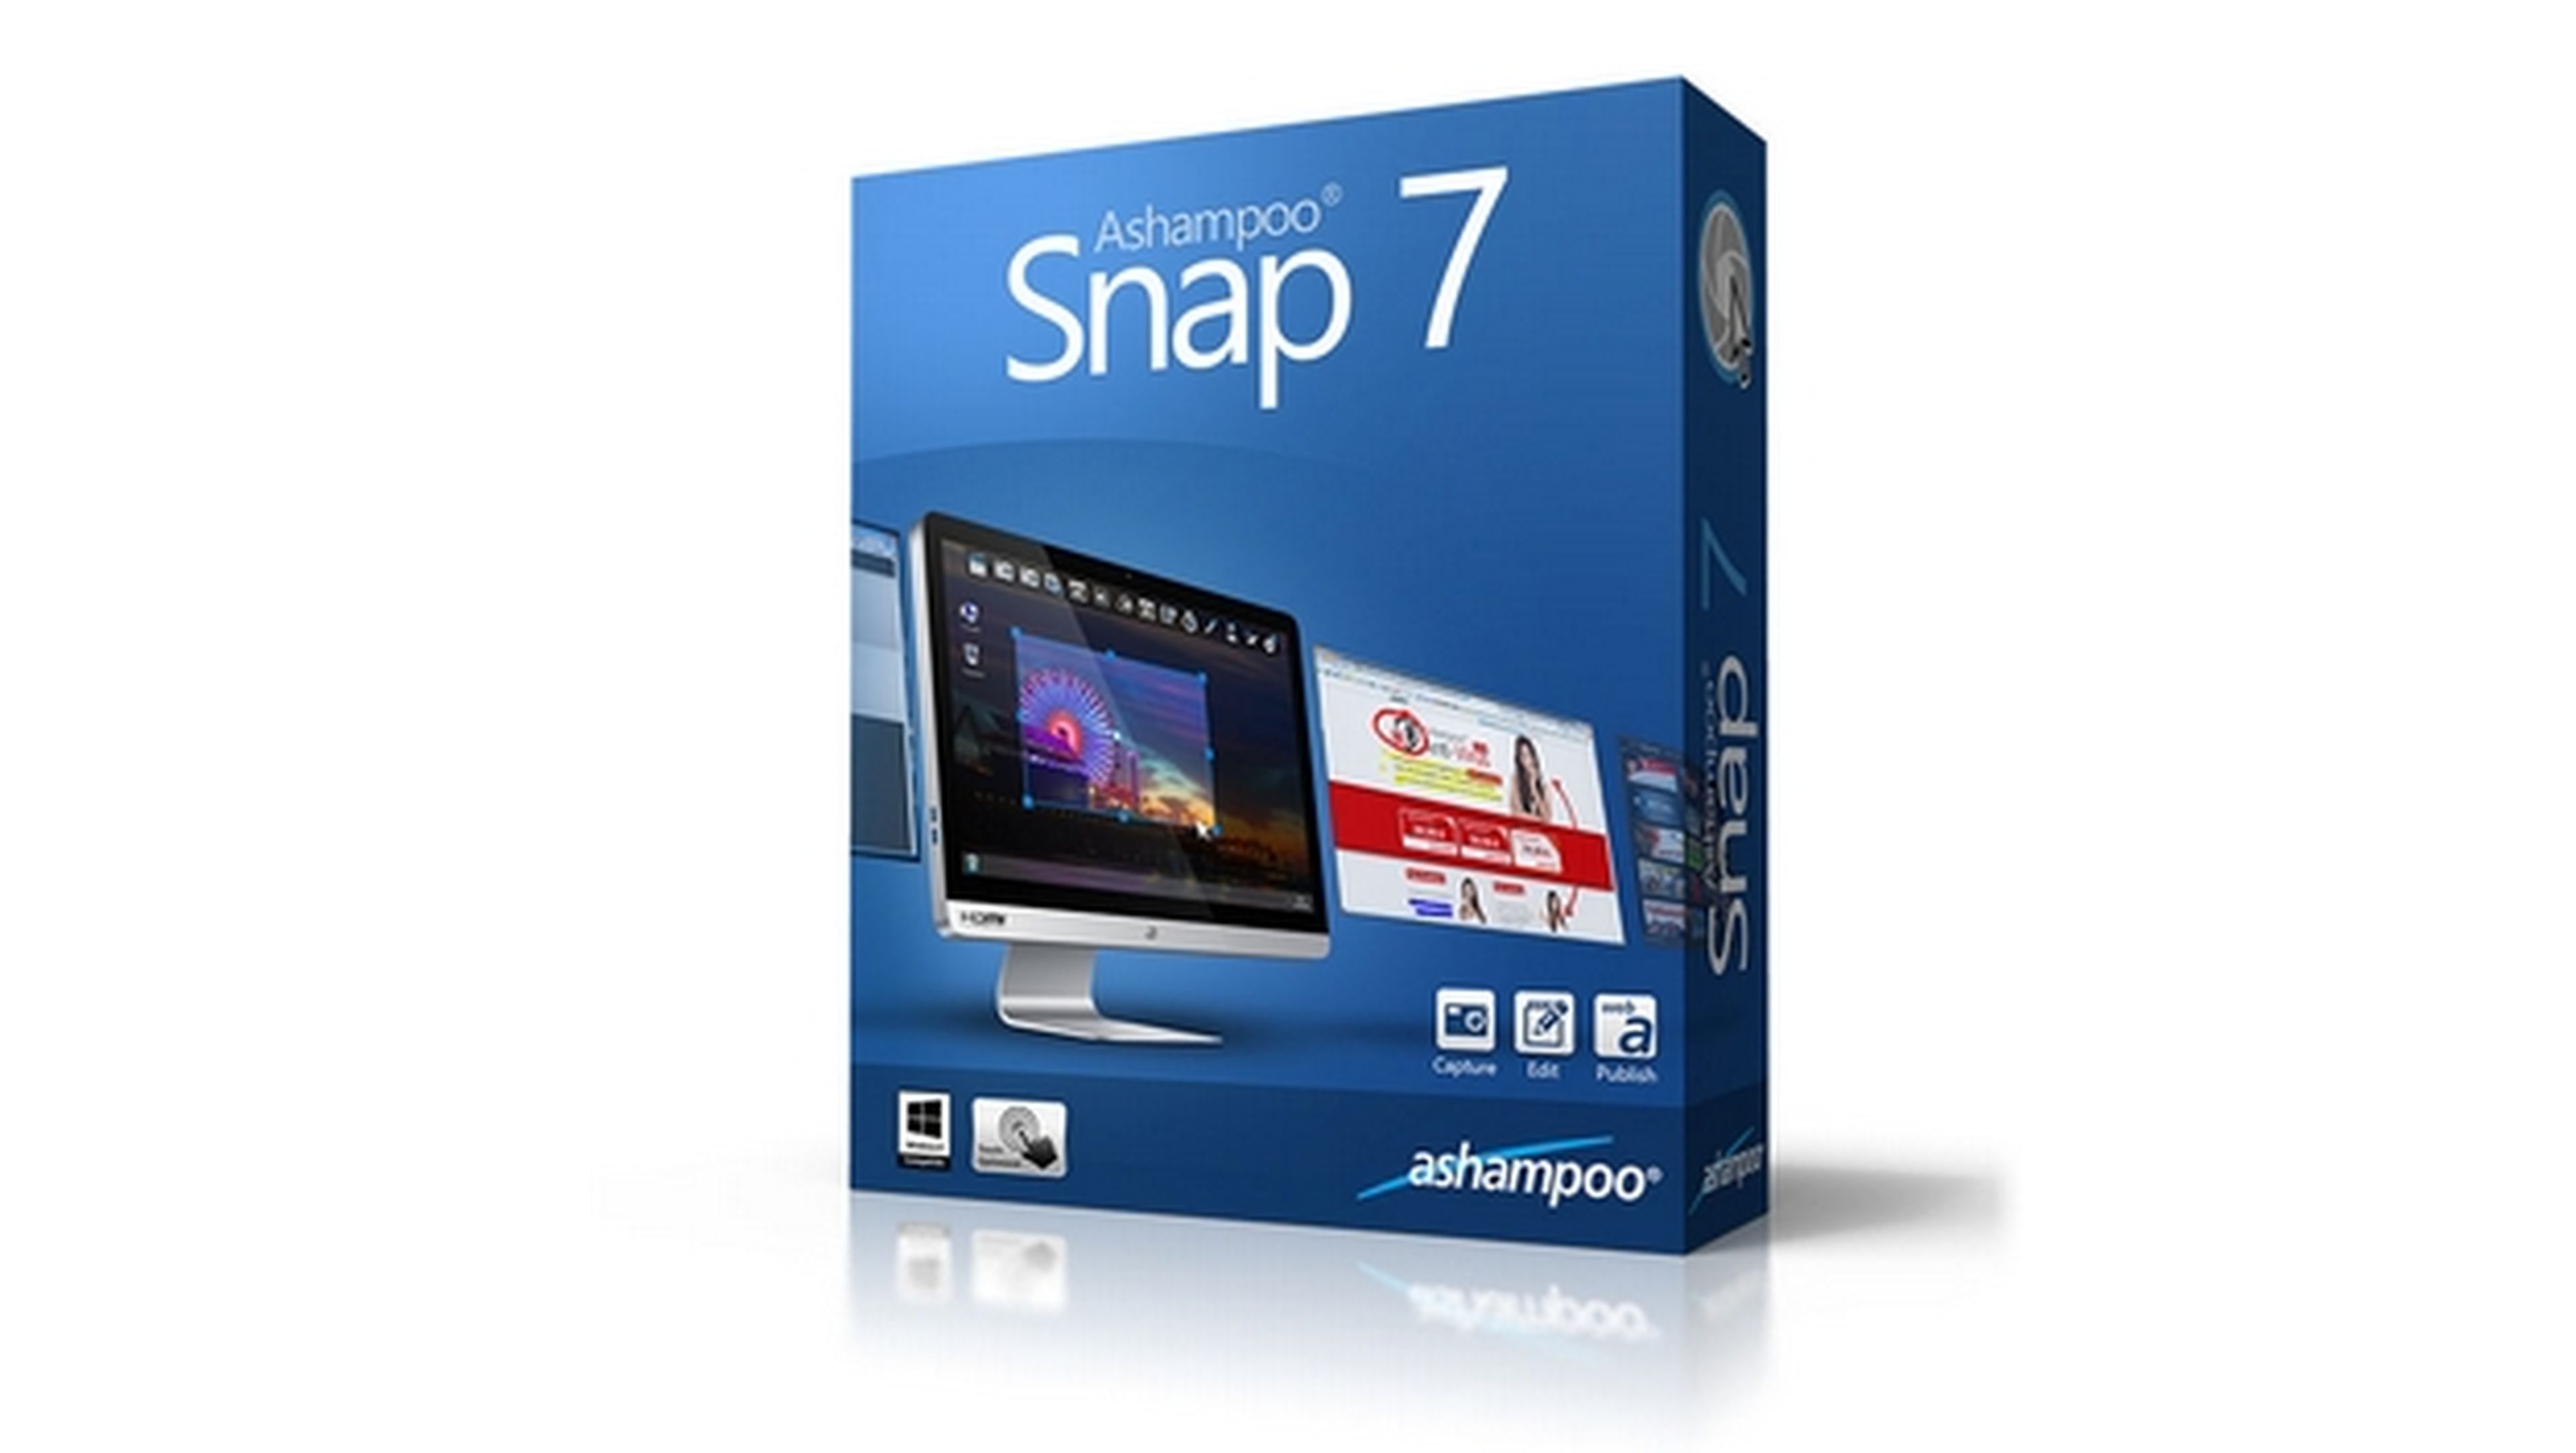 Ashampoo Snap 7, el capturador de pantallas y vídeos con editor y conversor de formatos